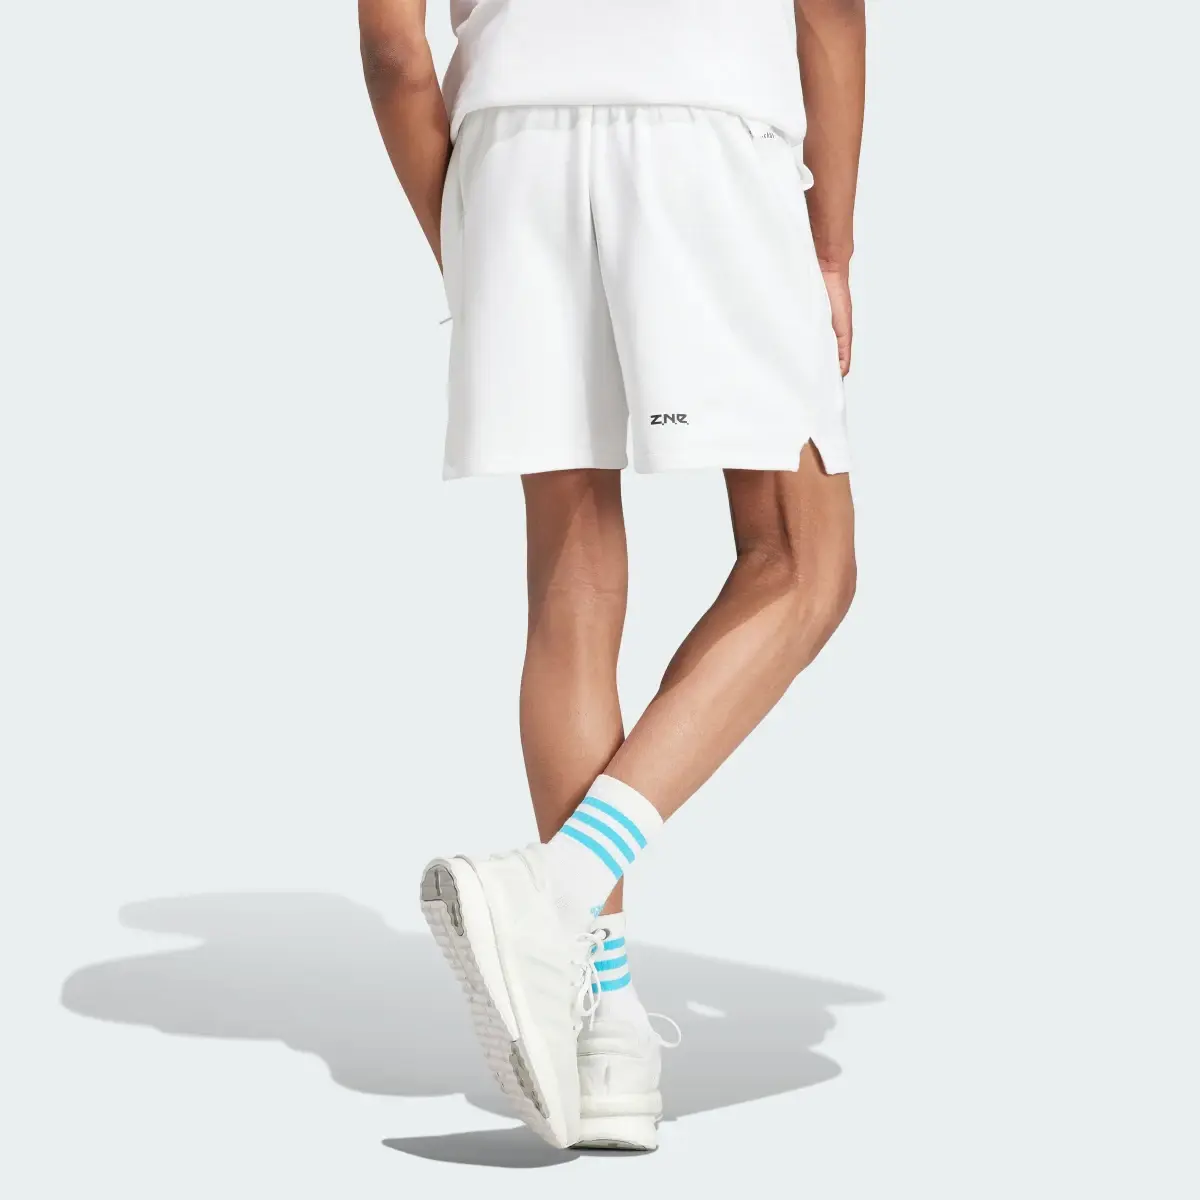 Adidas Z.N.E. Premium Shorts. 3